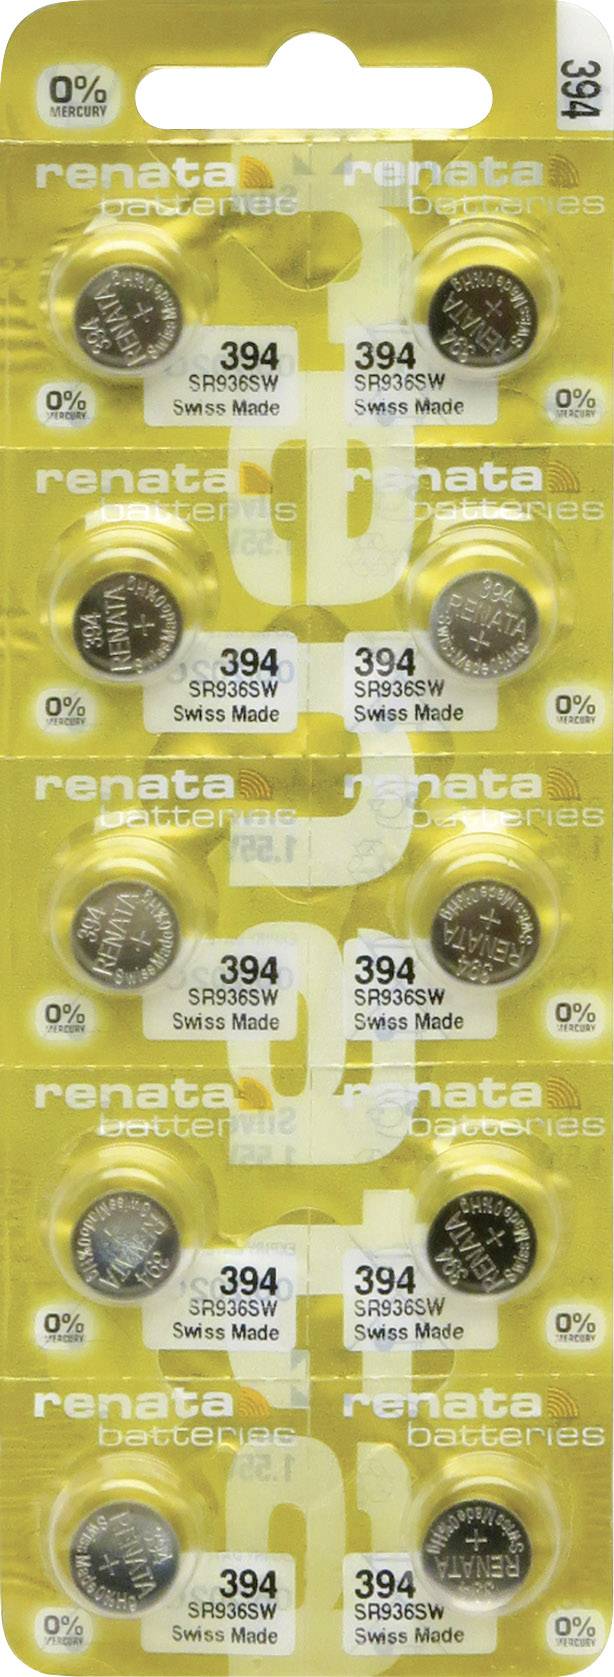 Renata 394/SR936SW pile bouton en oxyde d'argent pour montre 2